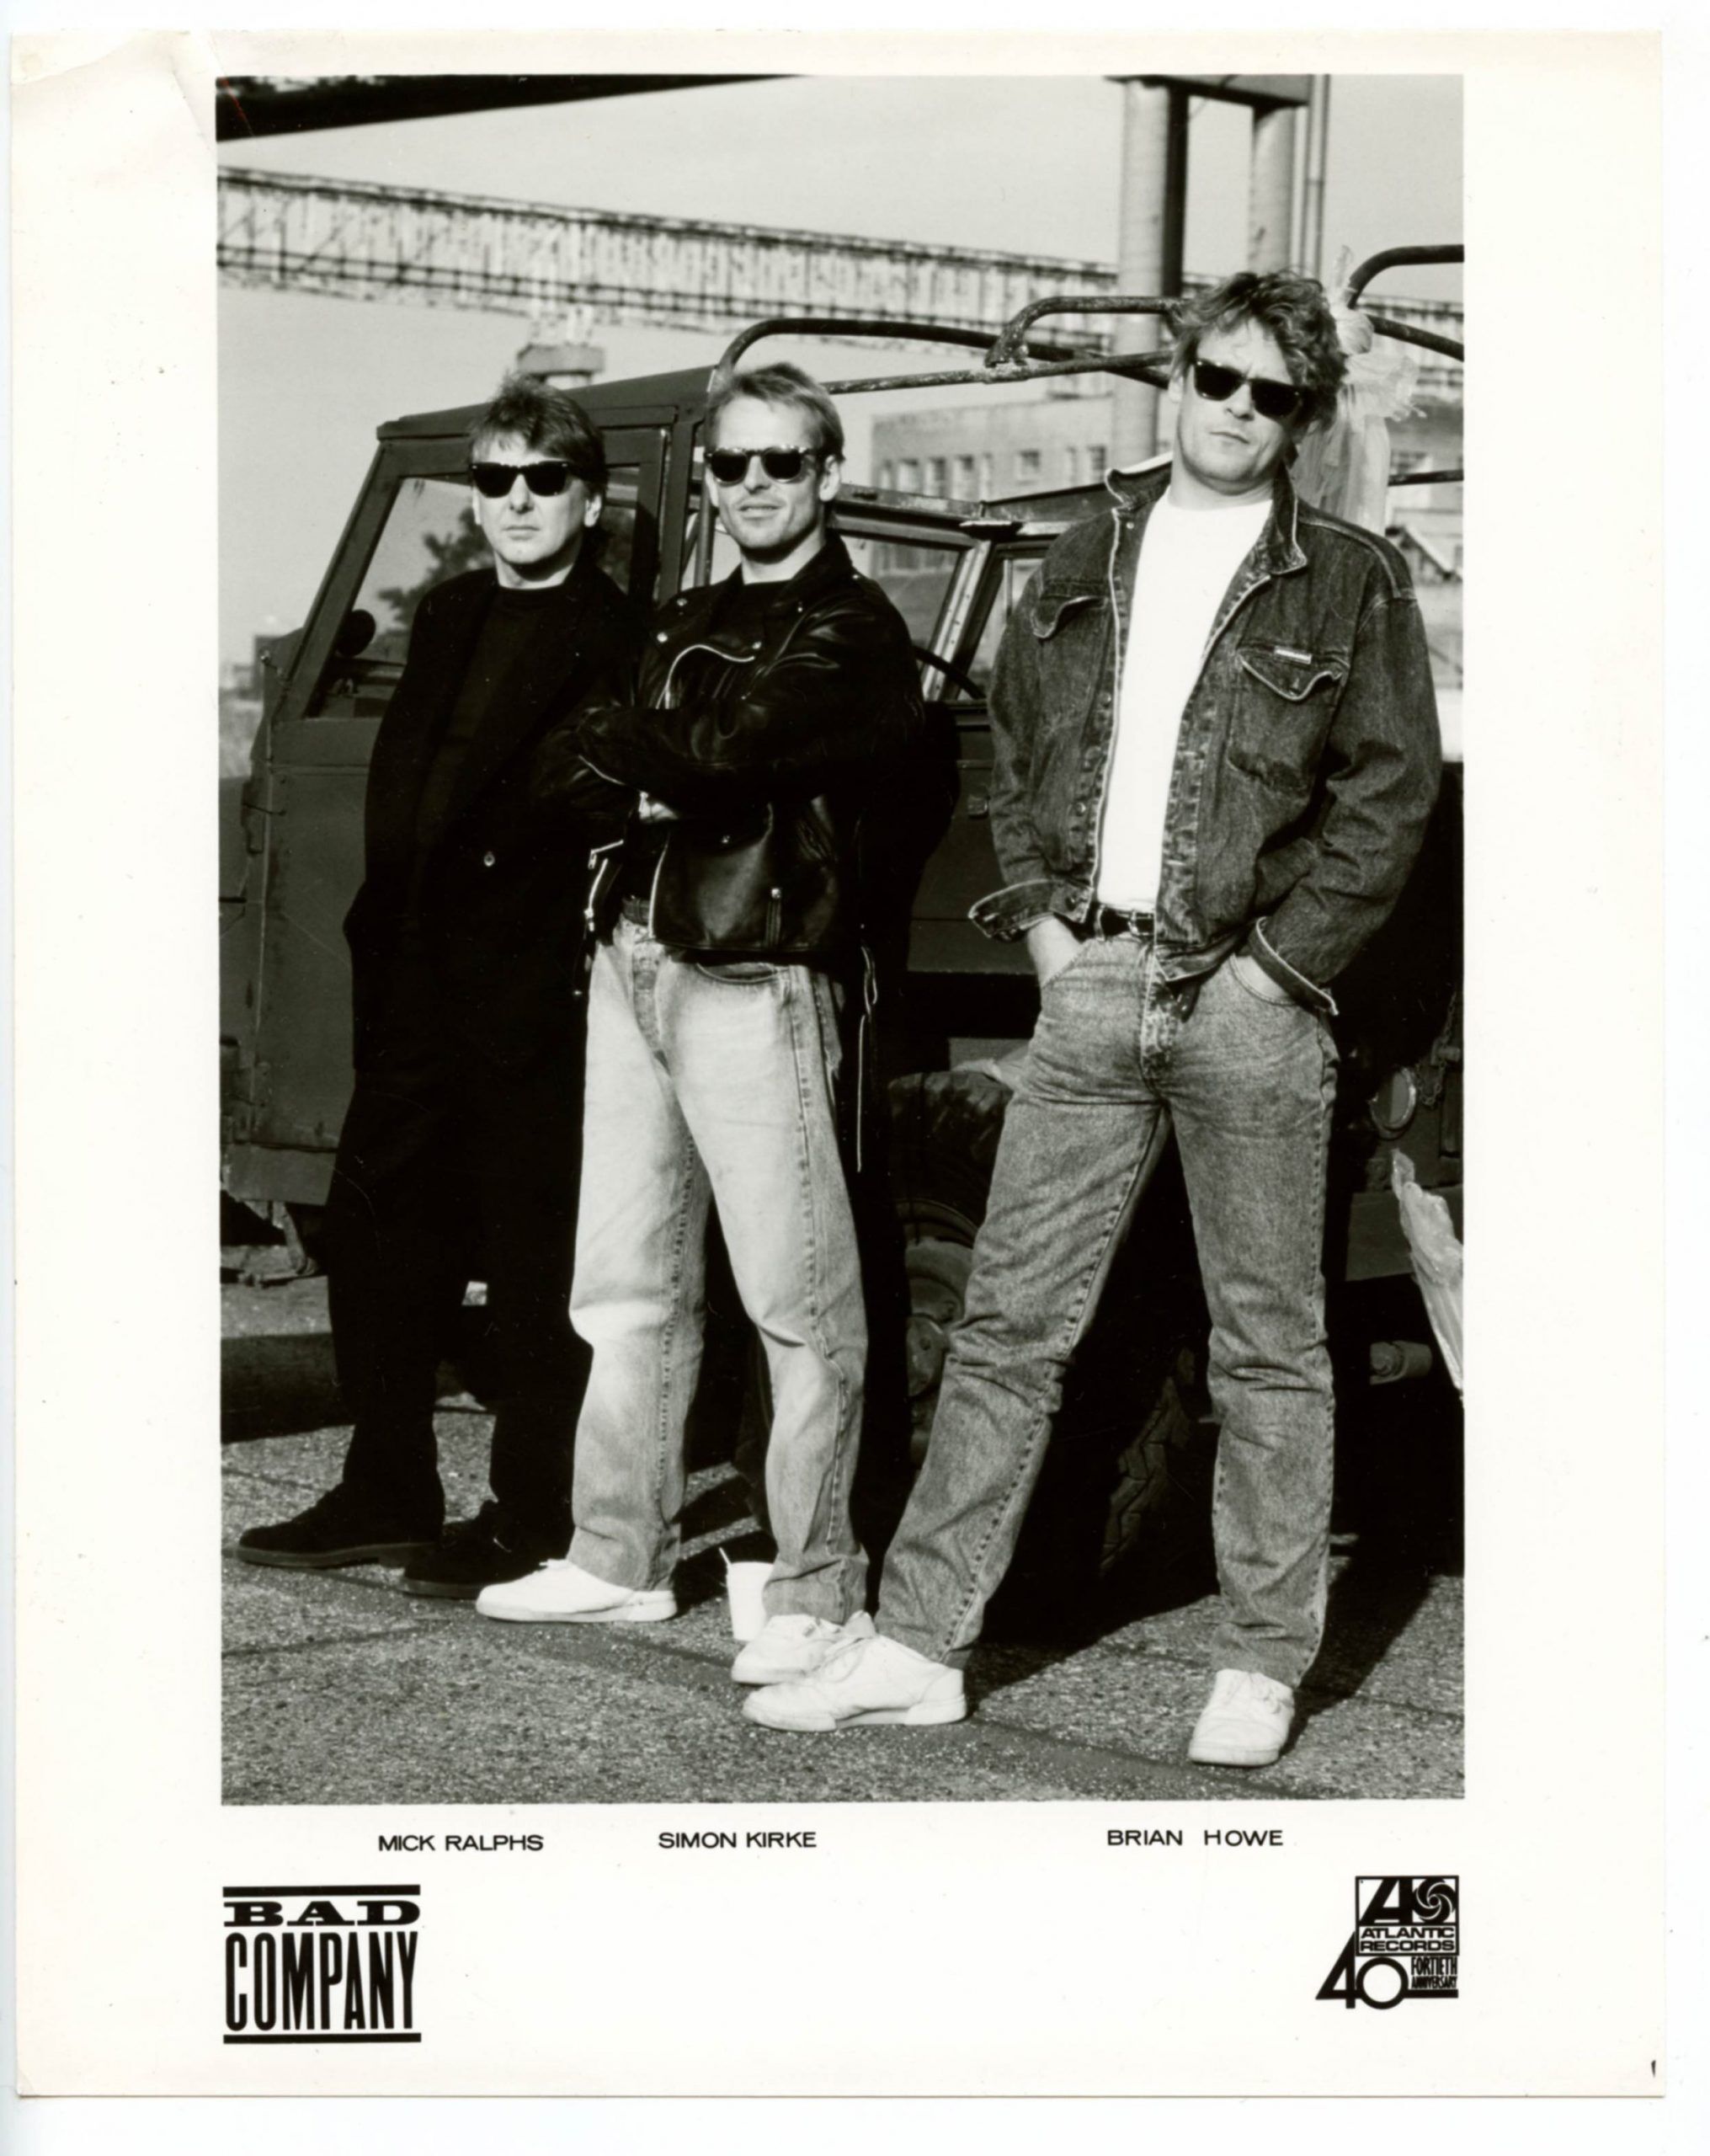 Bad Company Photo 1980s Atlantic Records